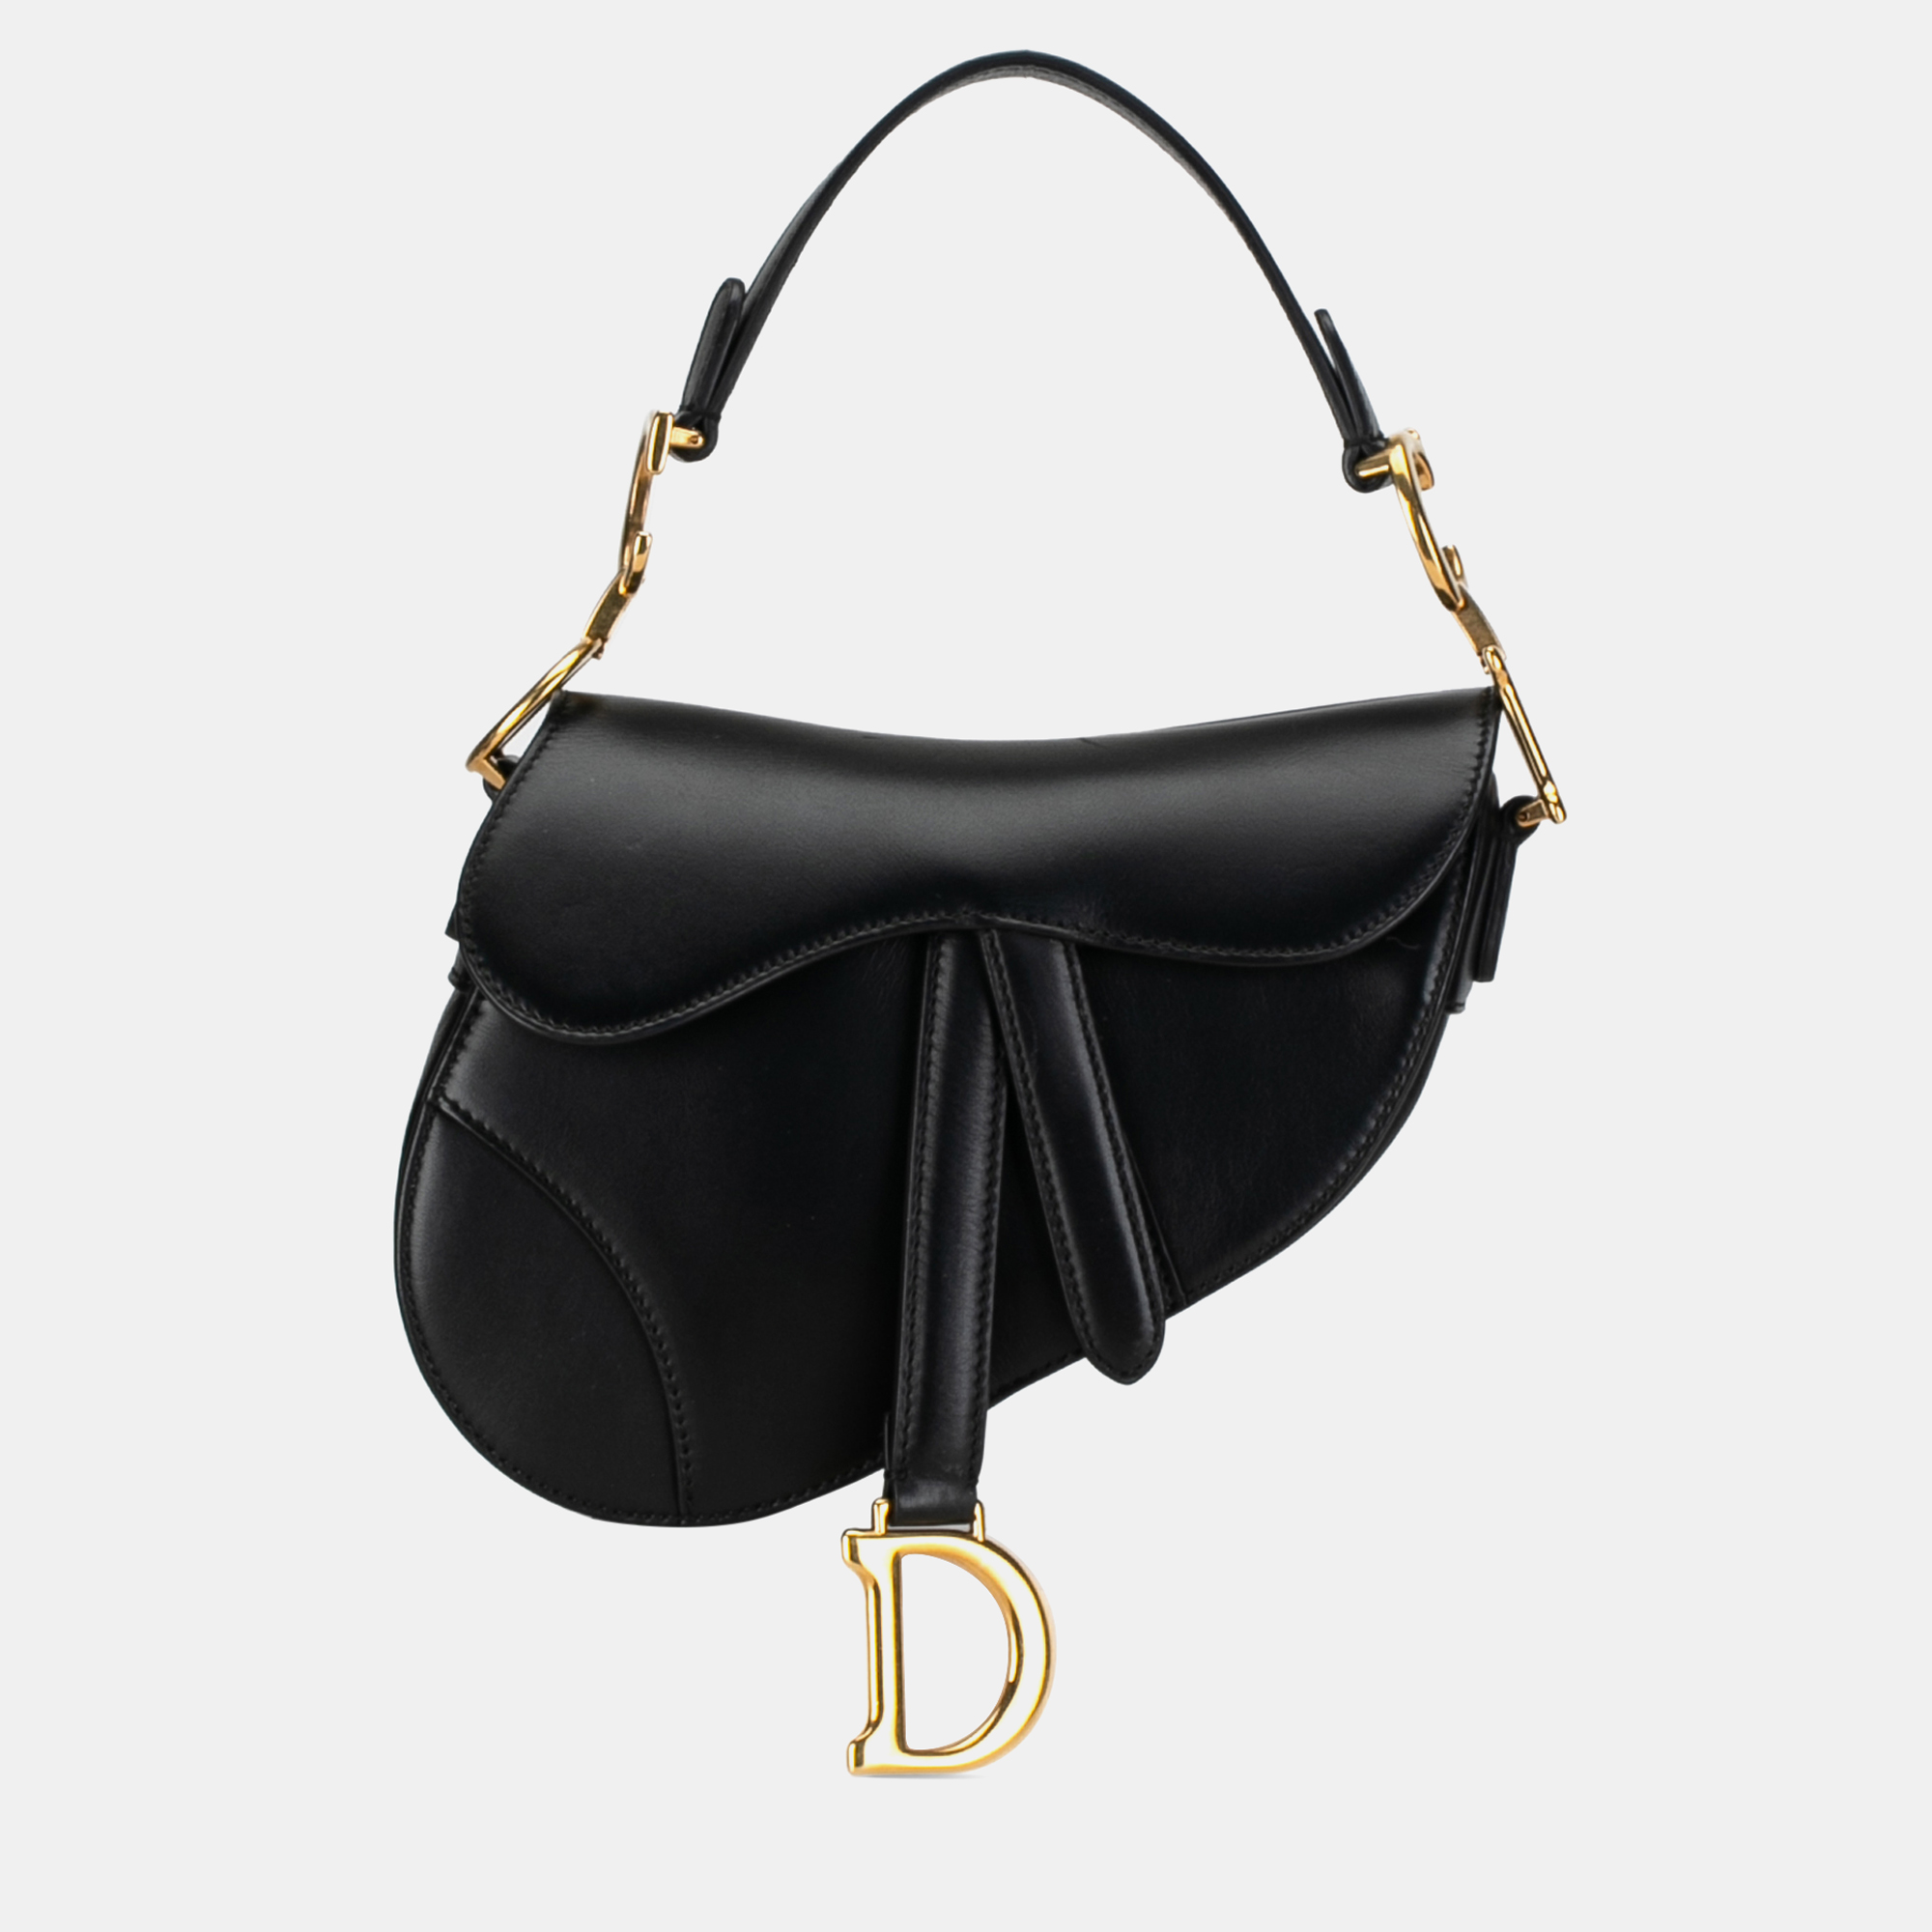 Dior mini leather saddle